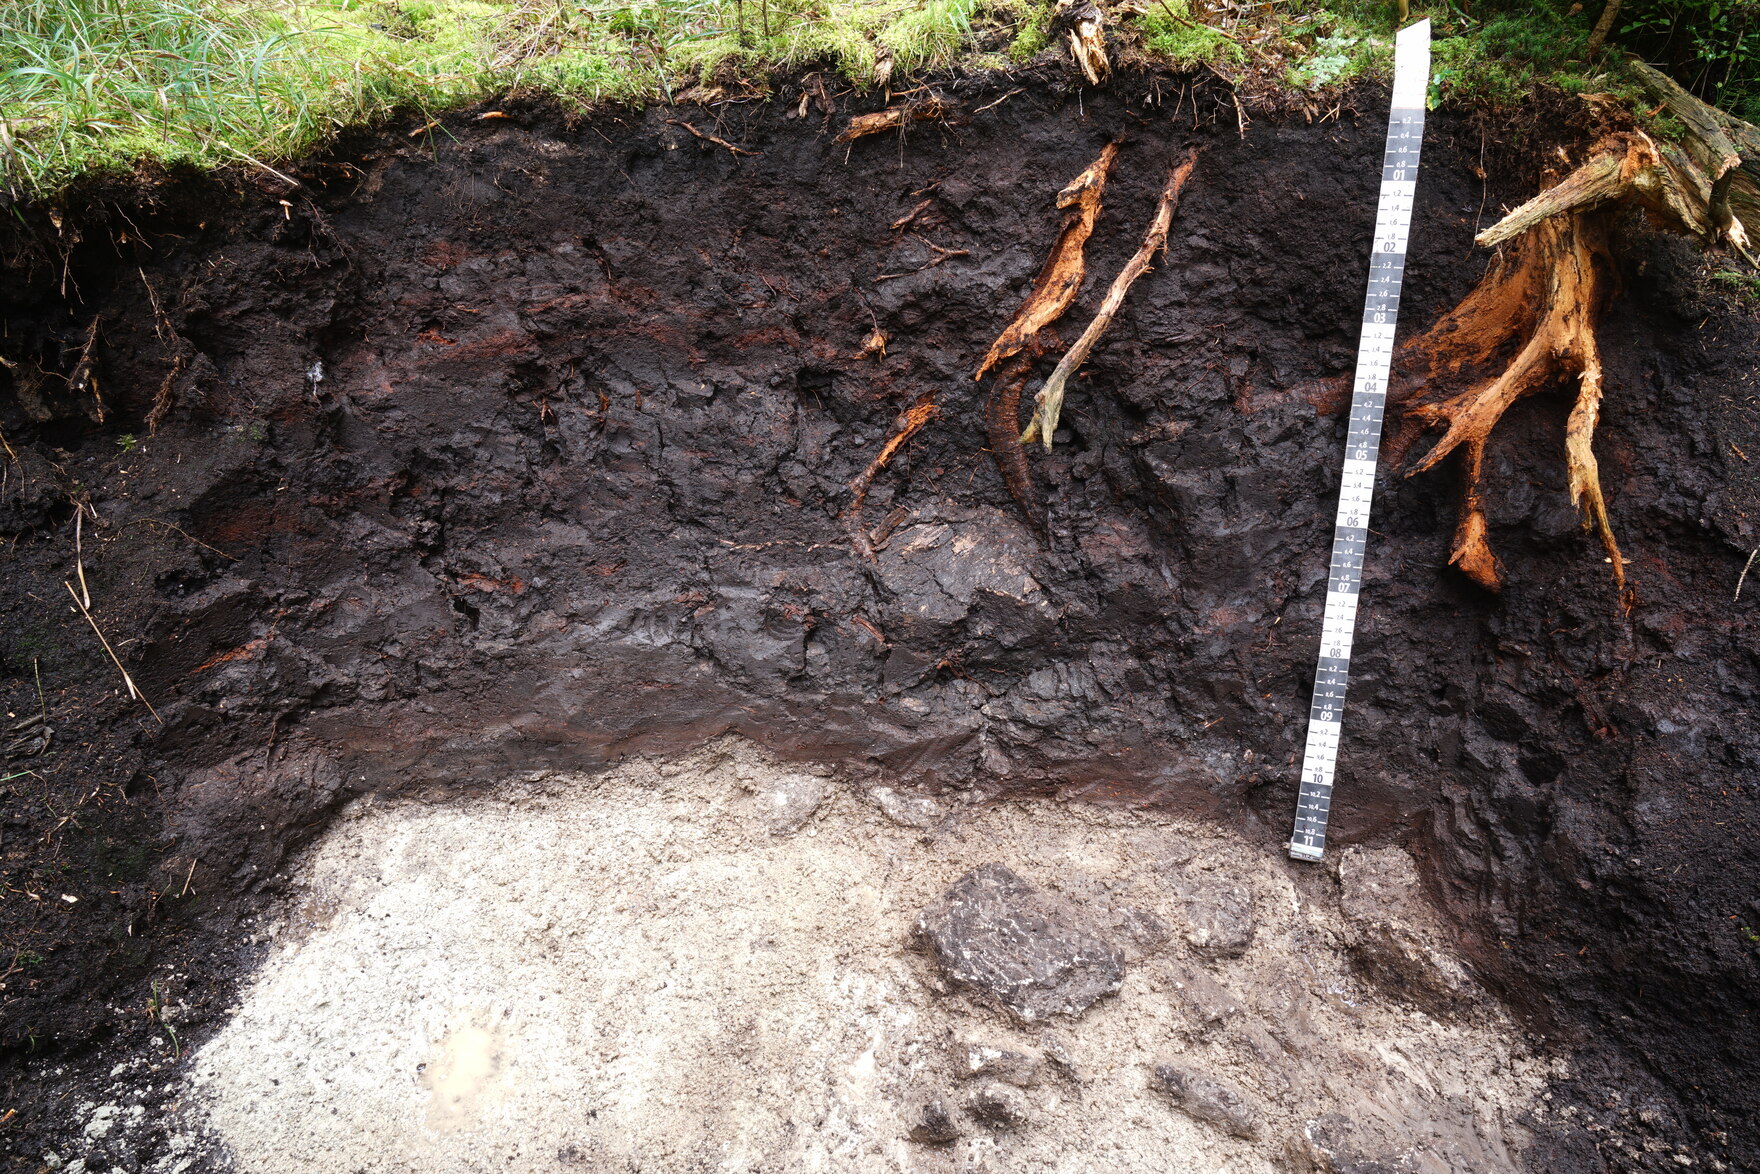 Das Bild zeigt ein Bodenprofil eines Moorbodens. Am oberen Rand sind grüne Moose und Gräser zu sehen, darunter dunkelbraun bis schwarz gefärbte Torfhorizonte und mit braunen Wurzeln durchsetzt. Darunter sieht man in weißlich-grauer Farbe Mineralboden.